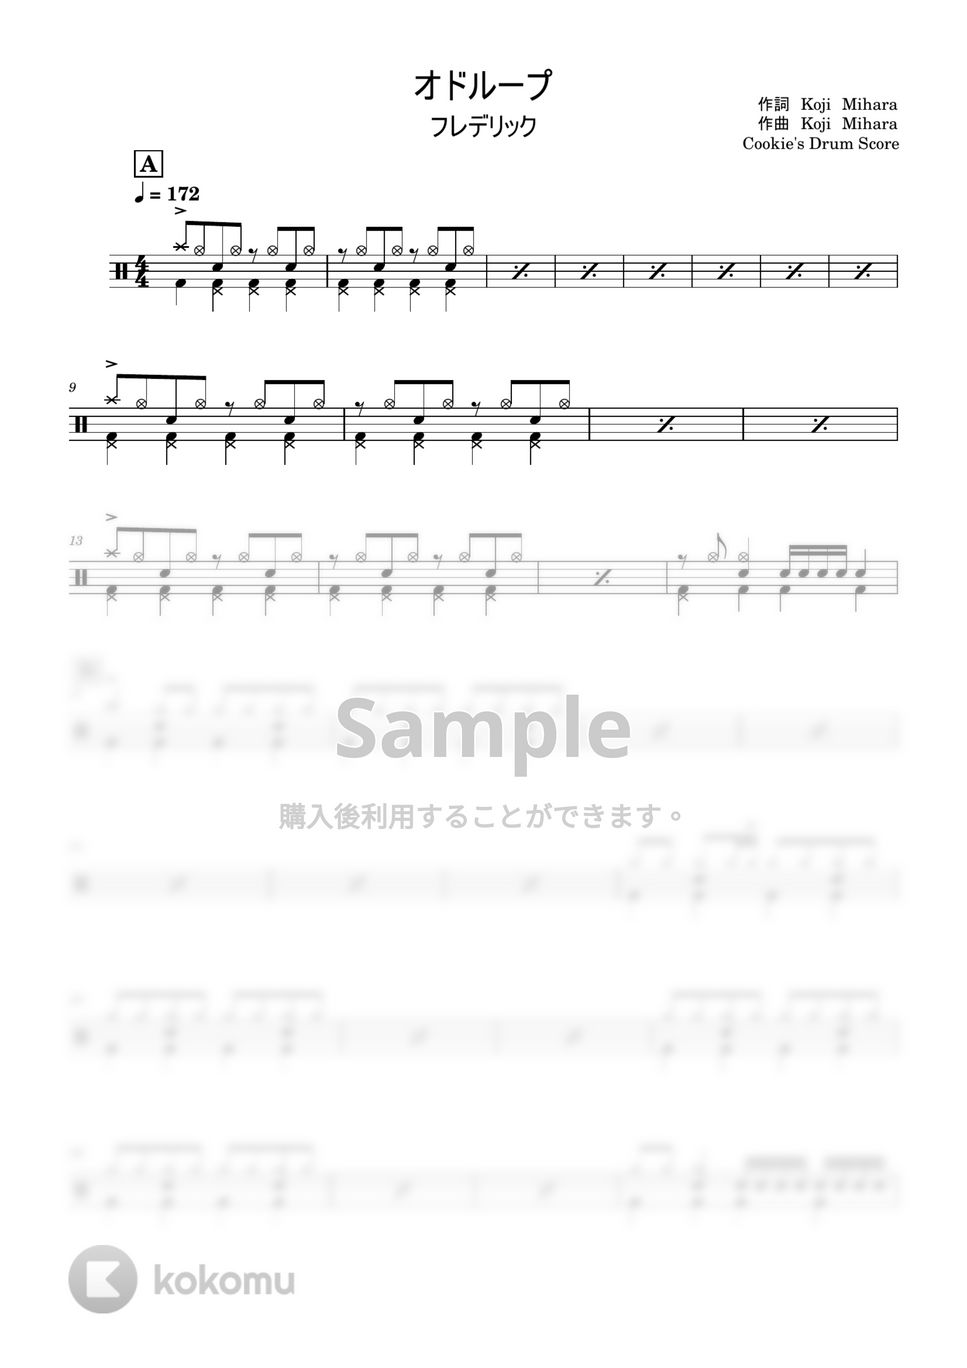 フレデリック - オドループ by Cookie's Drum Score